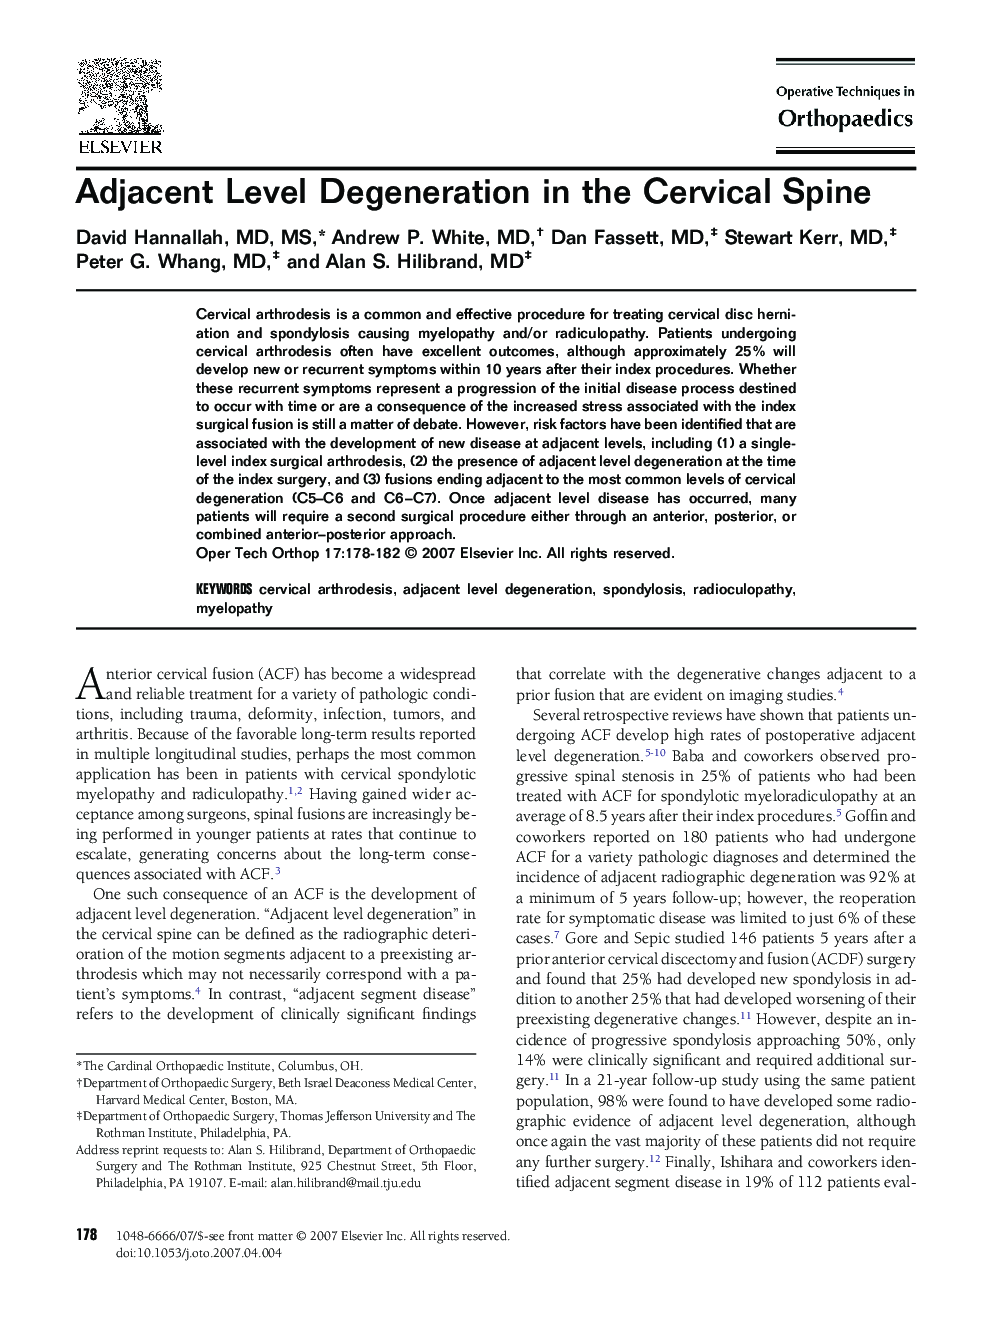 Adjacent Level Degeneration in the Cervical Spine